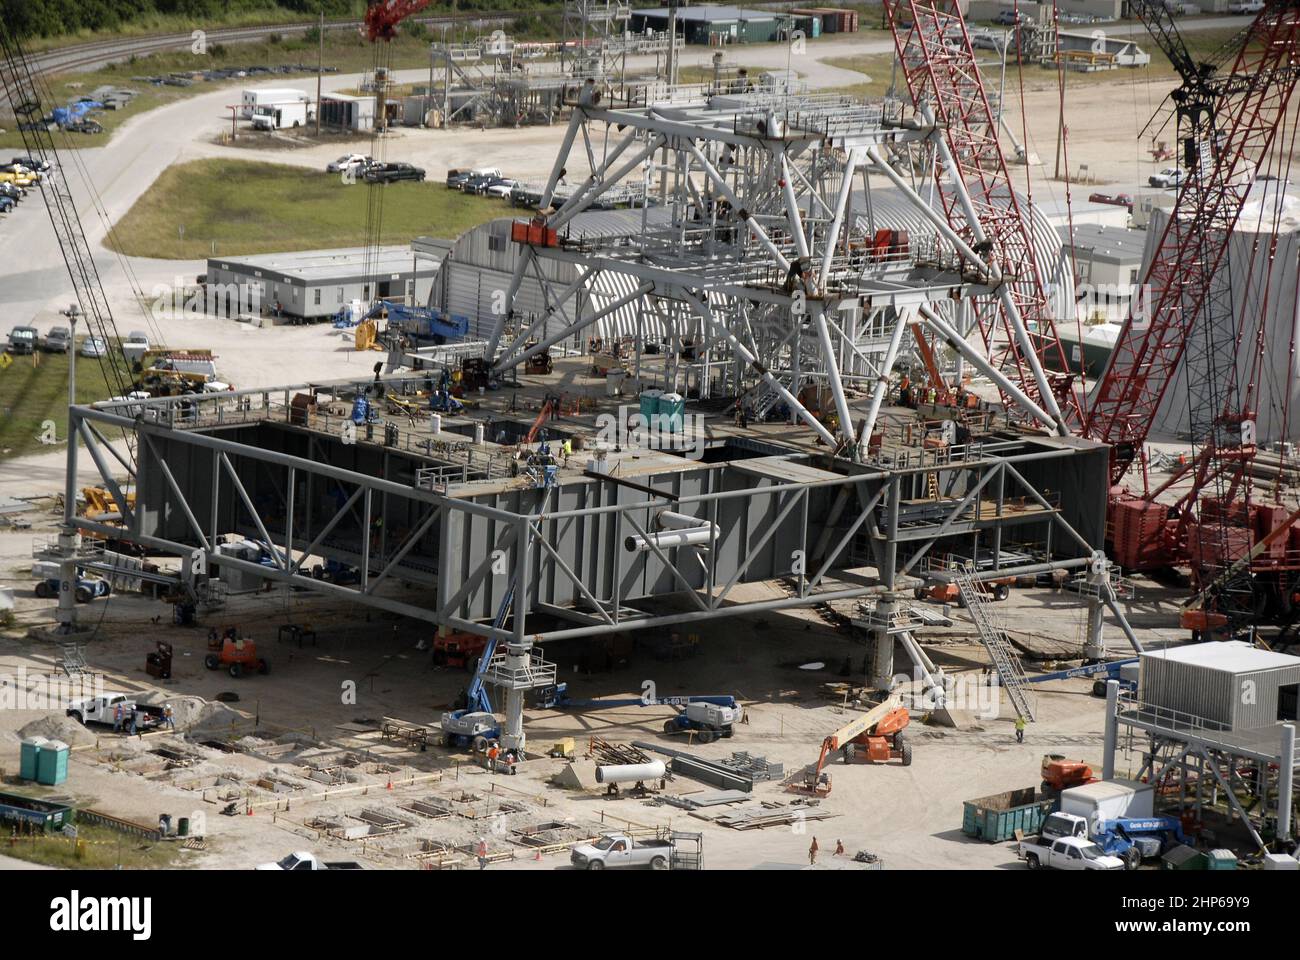 En el Centro Espacial Kennedy de la NASA en Florida, el área del parque de lanzadores móviles está retumbada con actividad mientras los trabajadores construyen un nuevo lanzador móvil, o ML, para el Programa Constelación Foto de stock